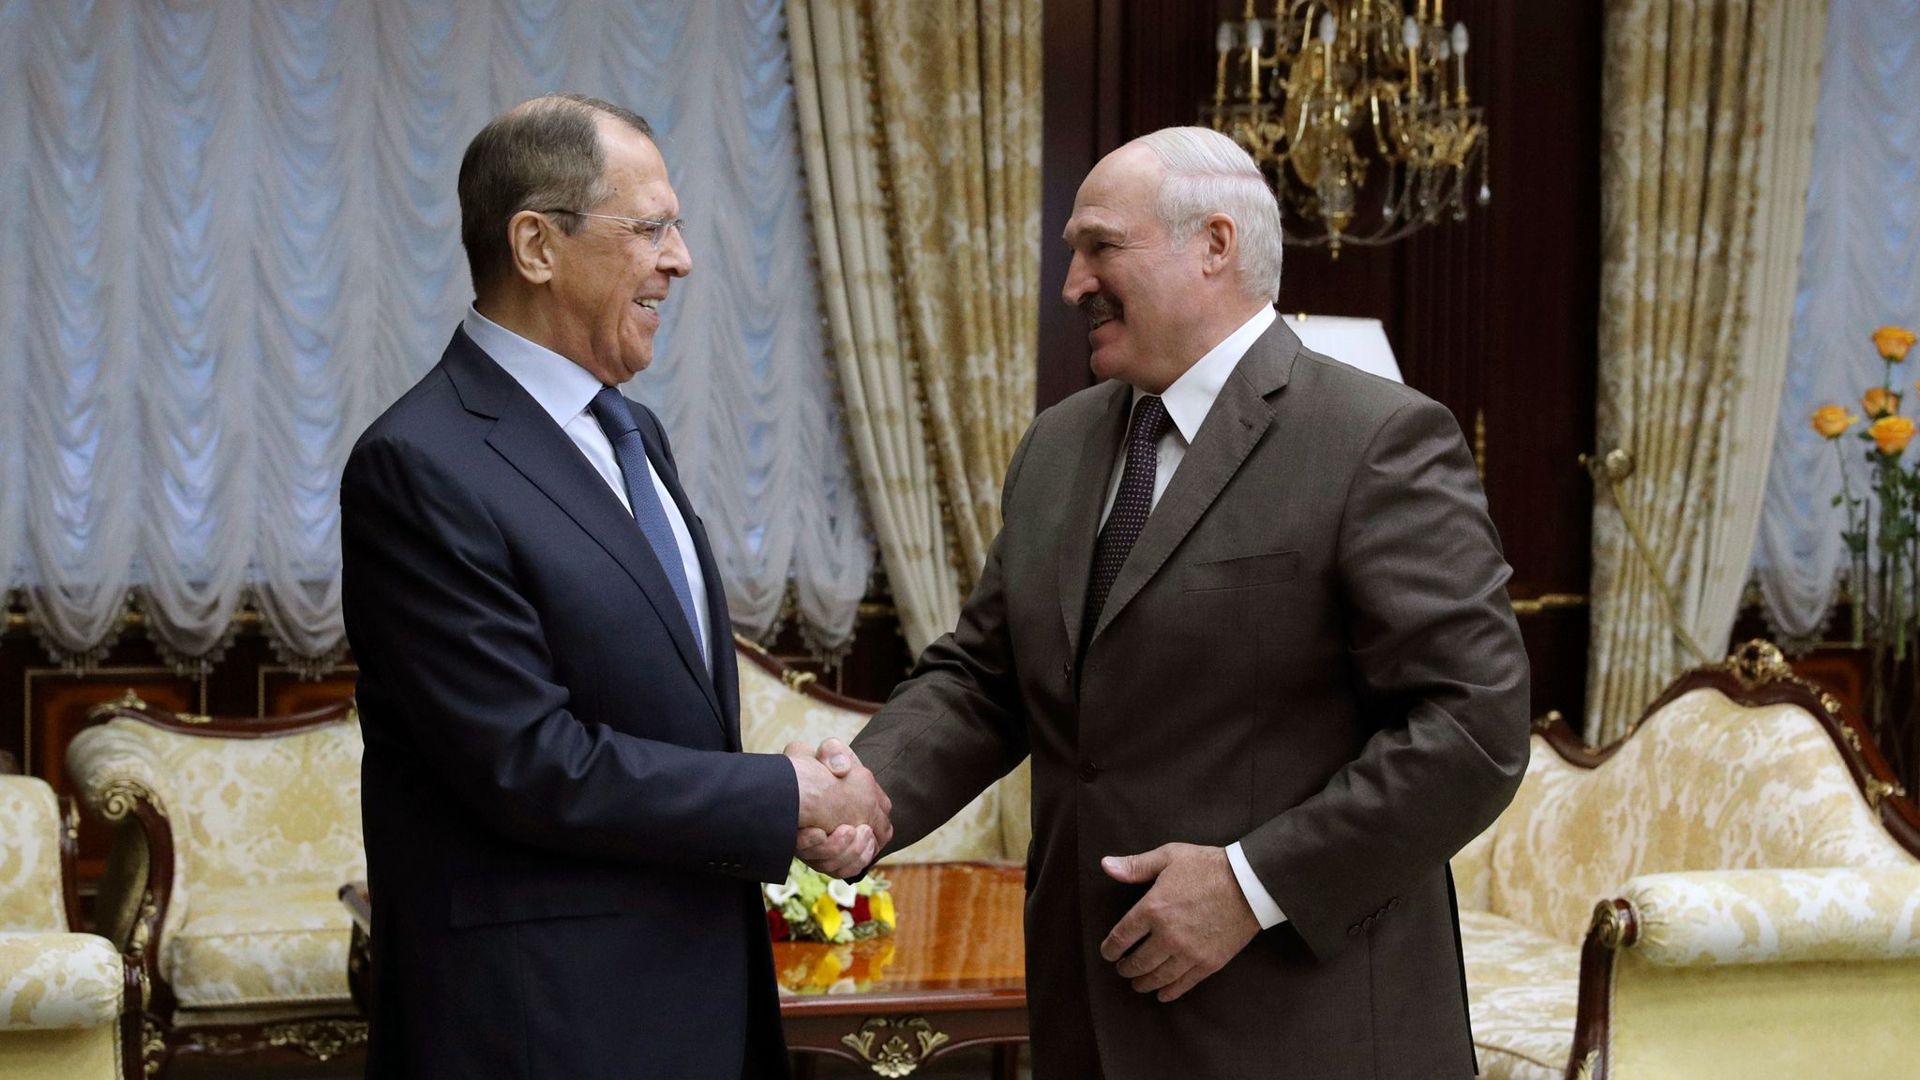 ARCHIV - Sergej Lawrow (l), Außenminister von Russland, schüttelt die Hand von Alexander Lukaschenko, Präsident von Belarus.